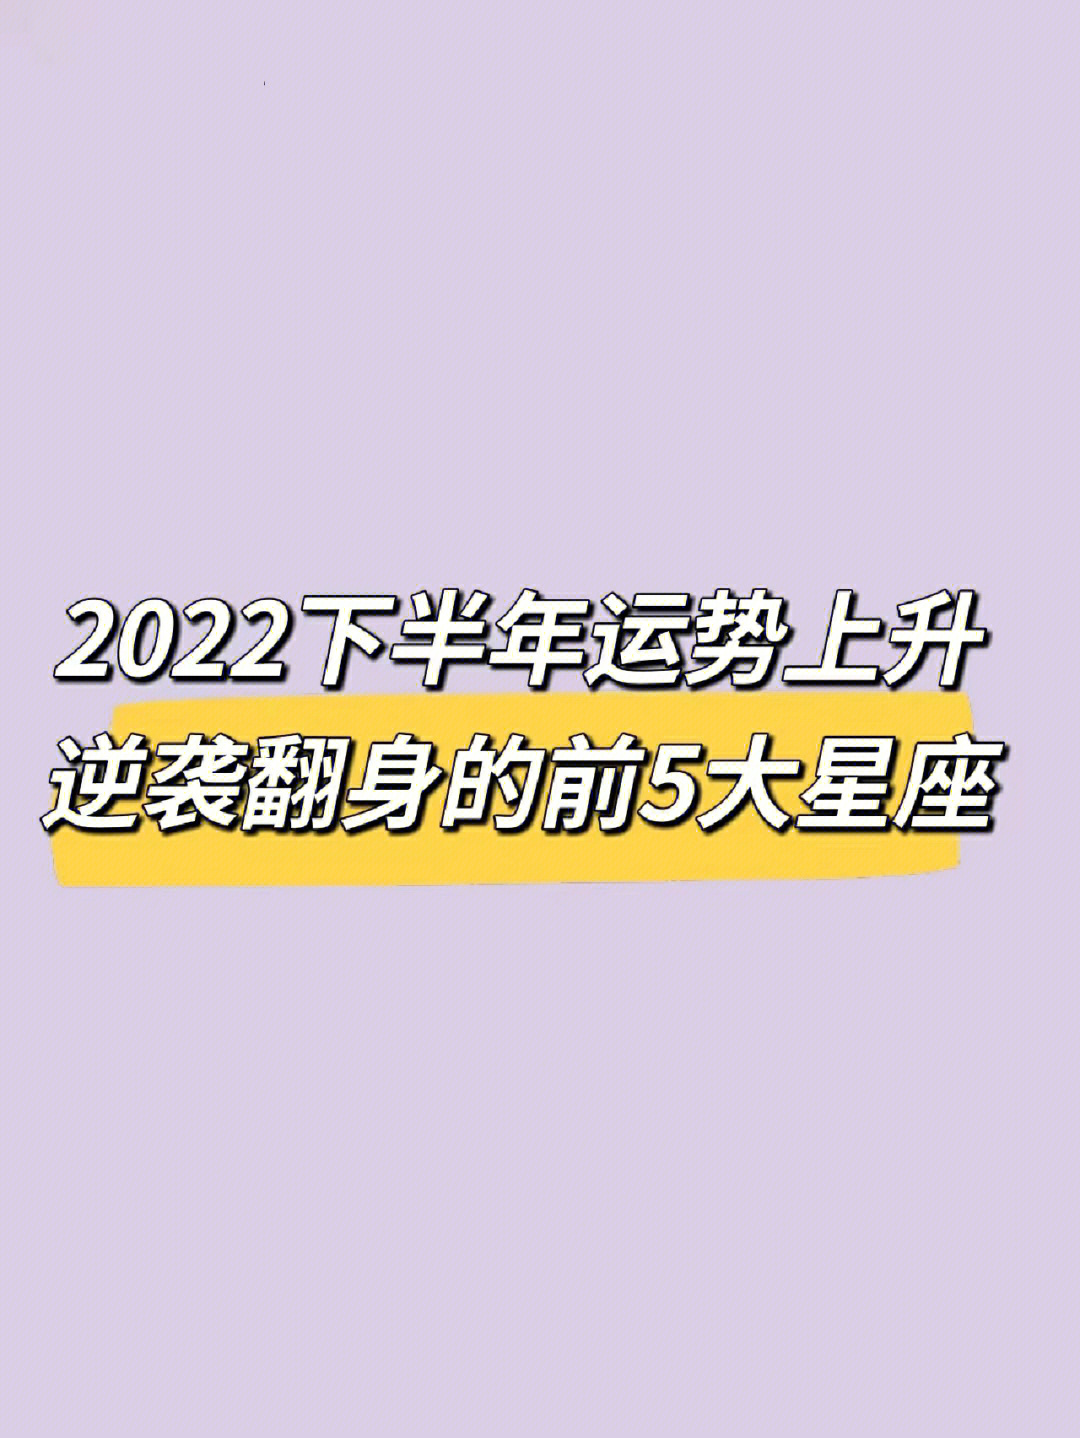 星座4月运势2022 2022最新星座日期表